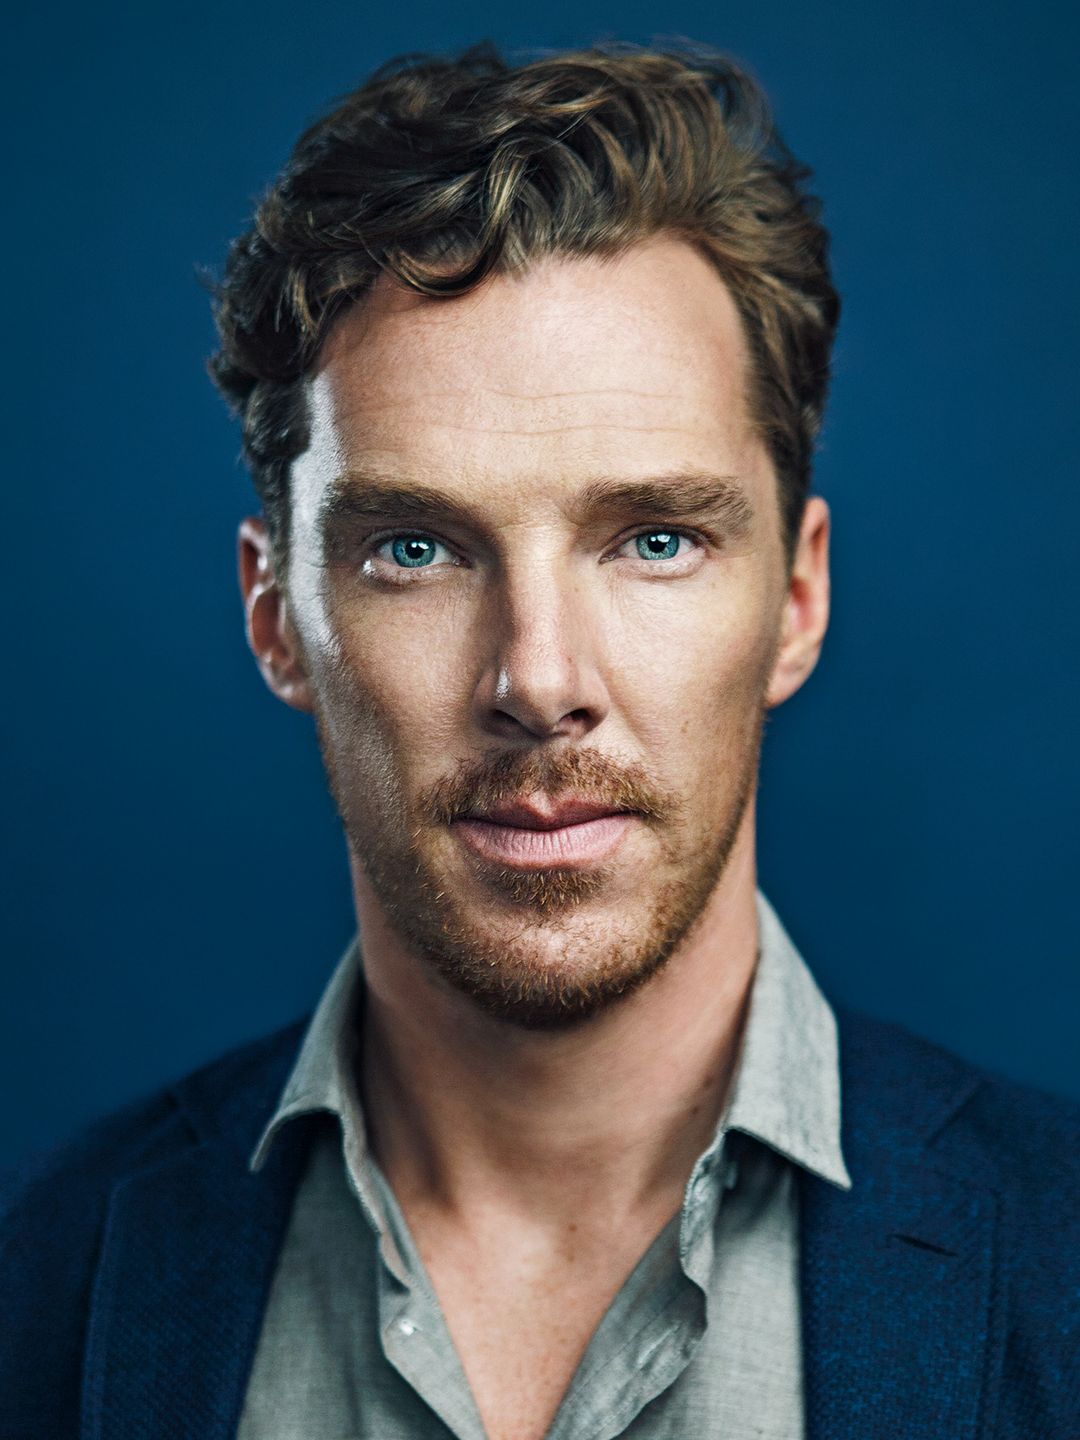 Benedict Cumberbatch current look